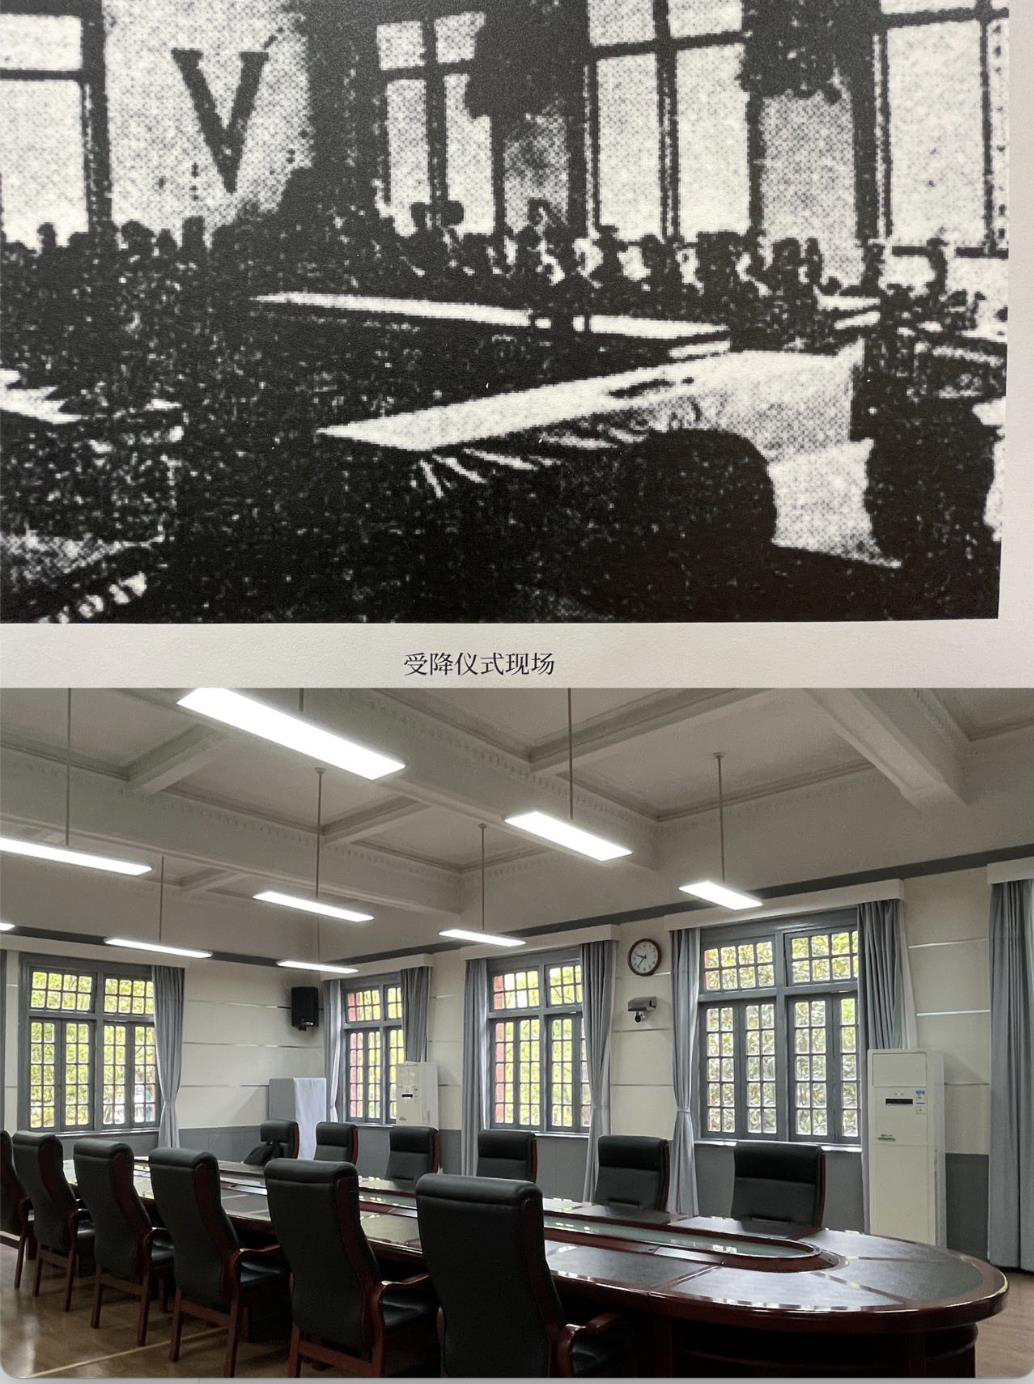 湖南大學科學館，是是抗日勝利後第四戰區受降儀式所在地的今與昔。記者賴錦宏/攝影